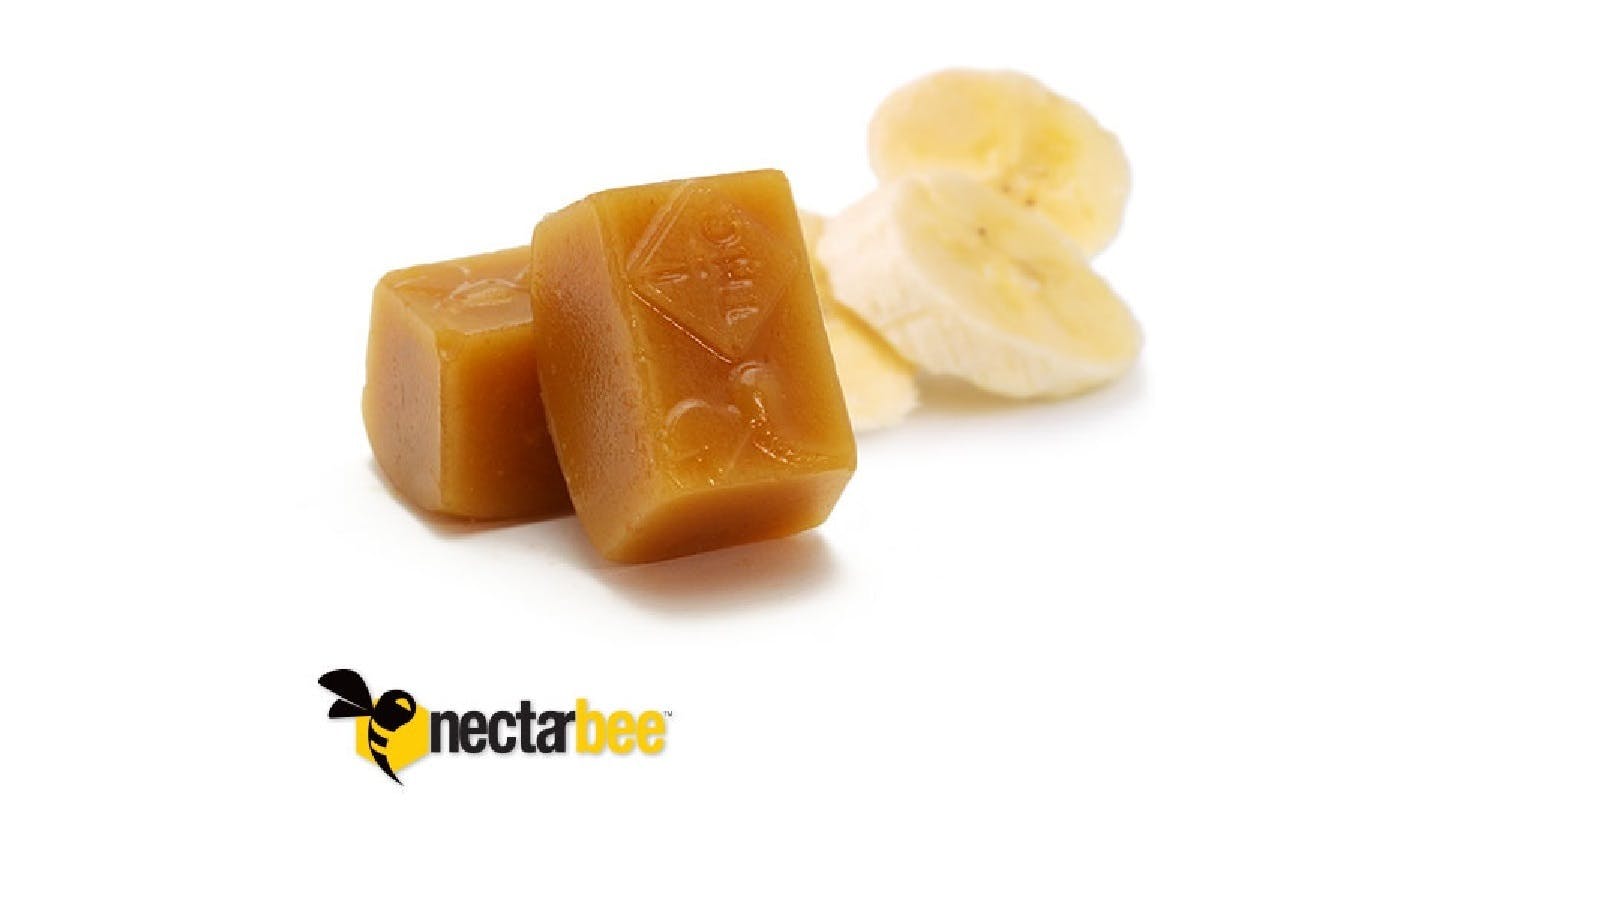 edible-nectarbee-bananas-foster-caramel